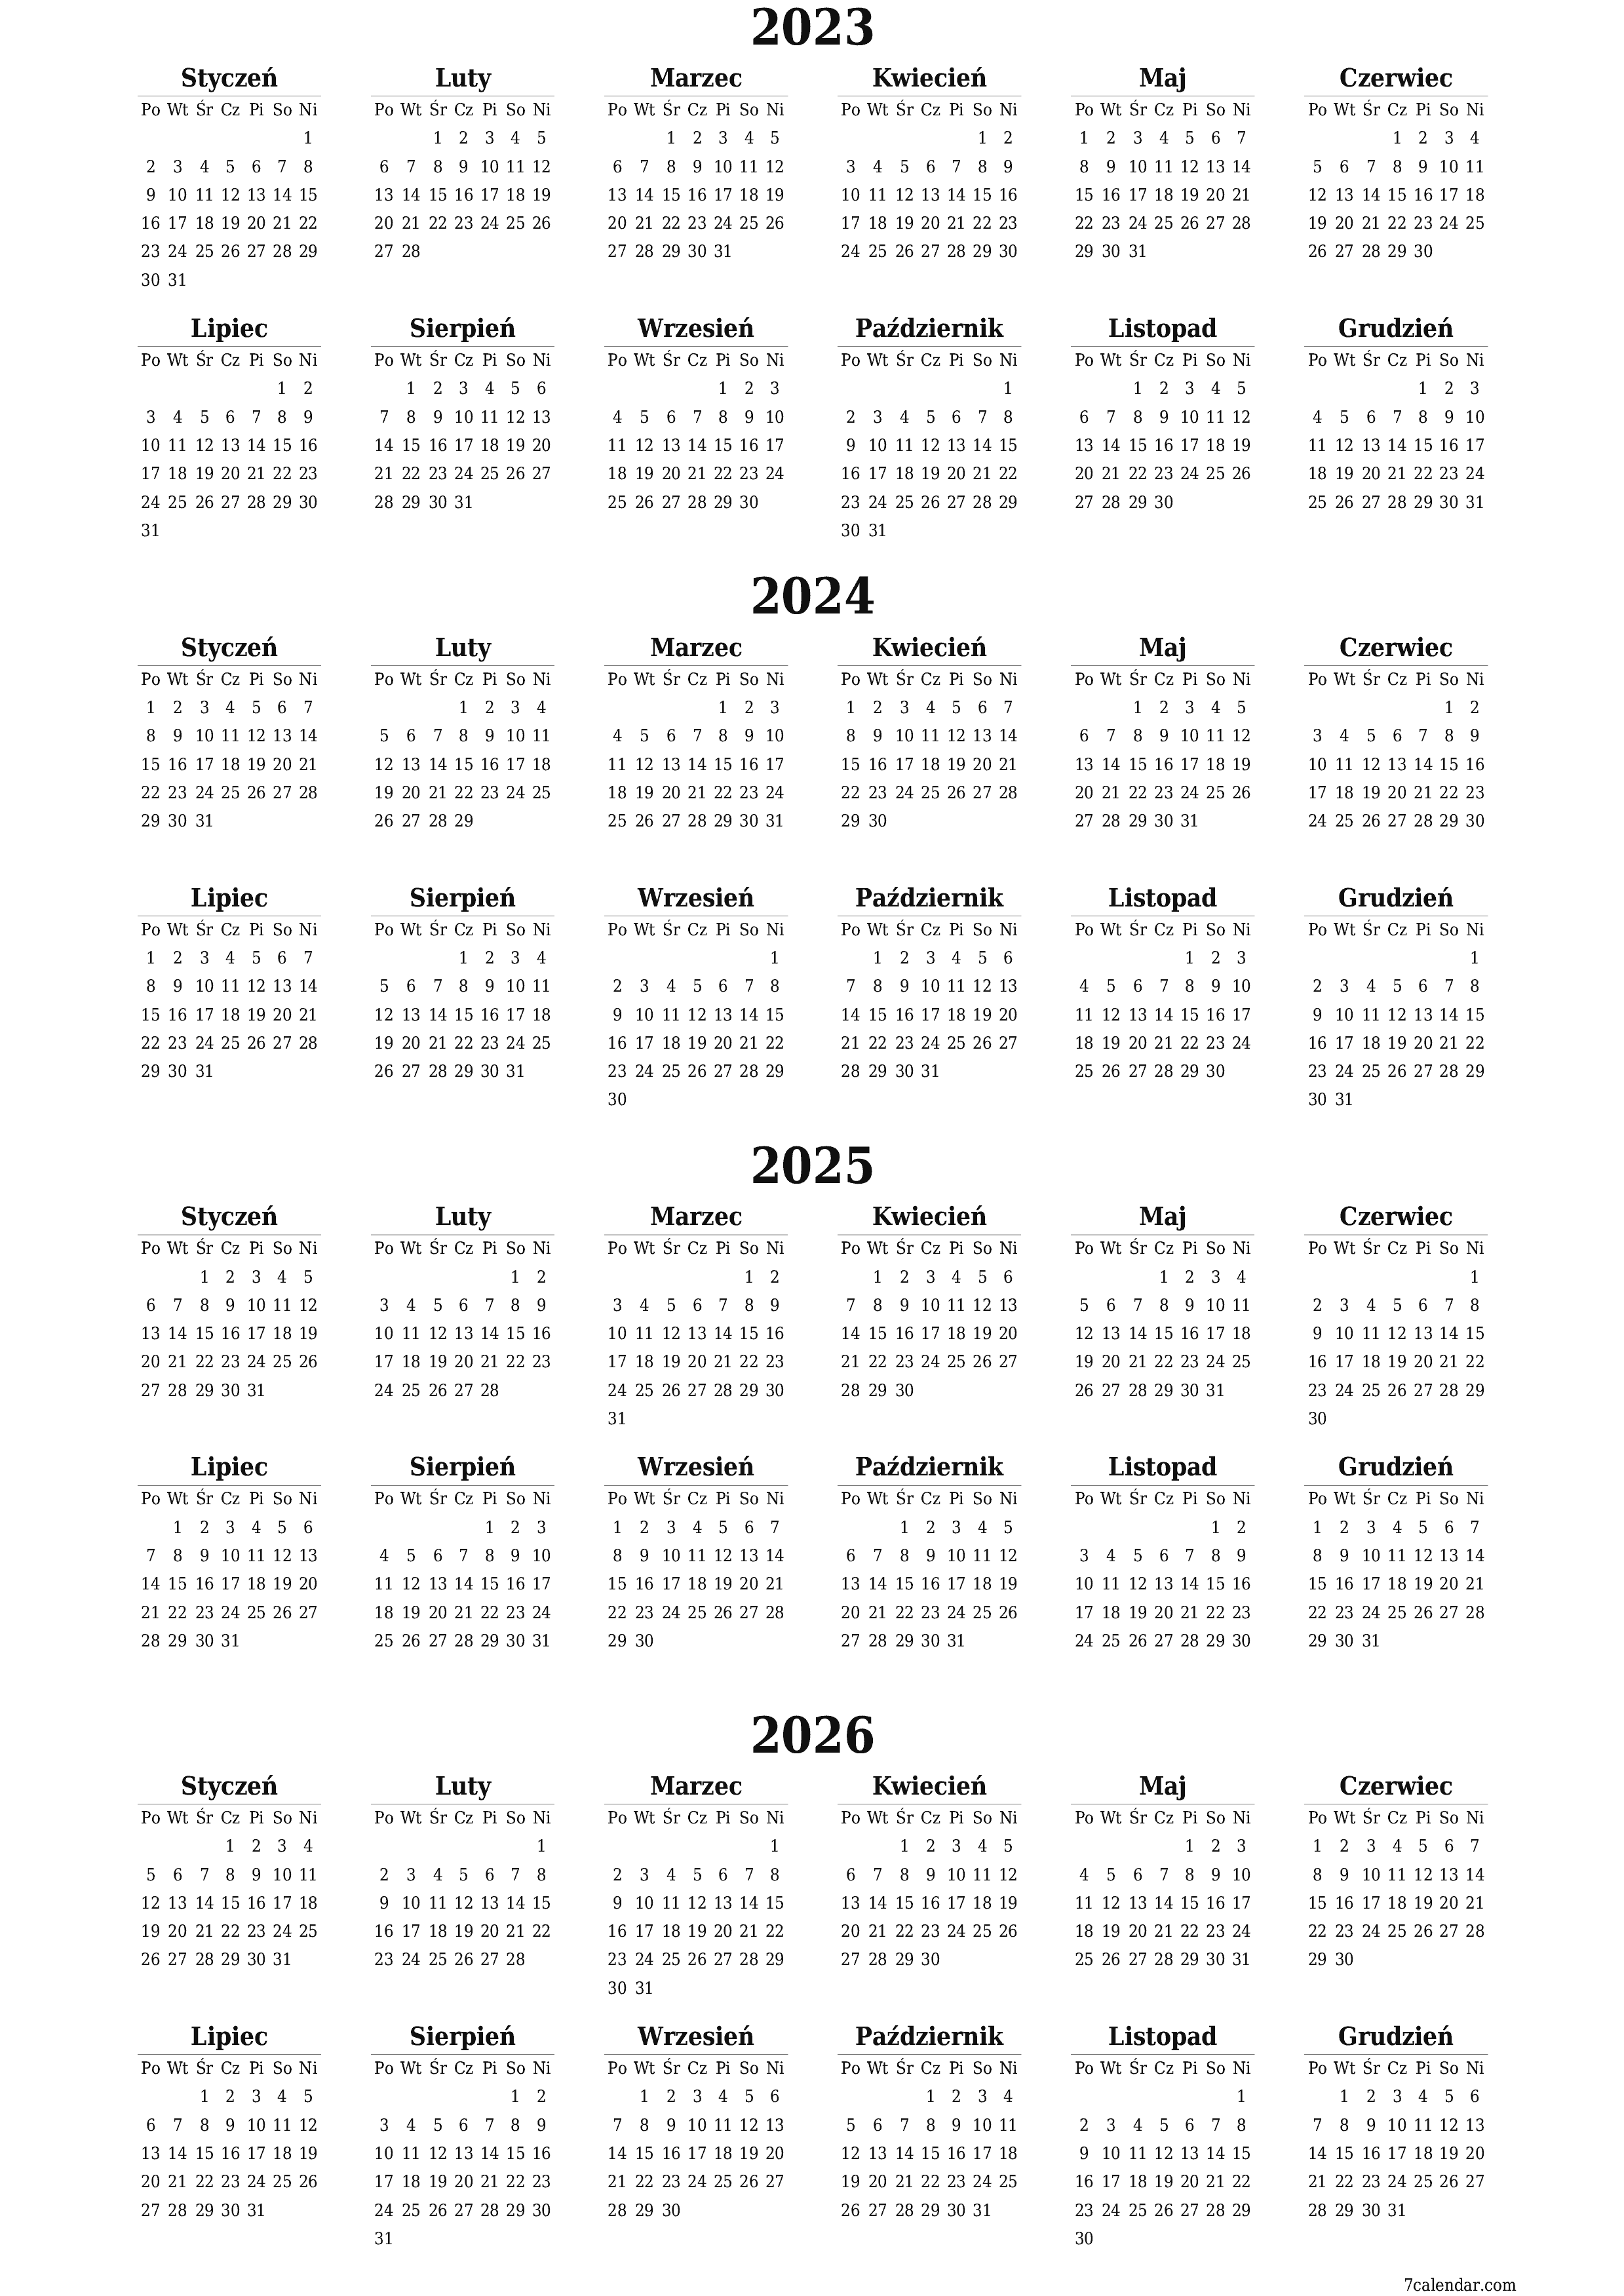  do druku ścienny szablon a darmowy pionowy Yearly kalendarz Luty (Lut) 2023